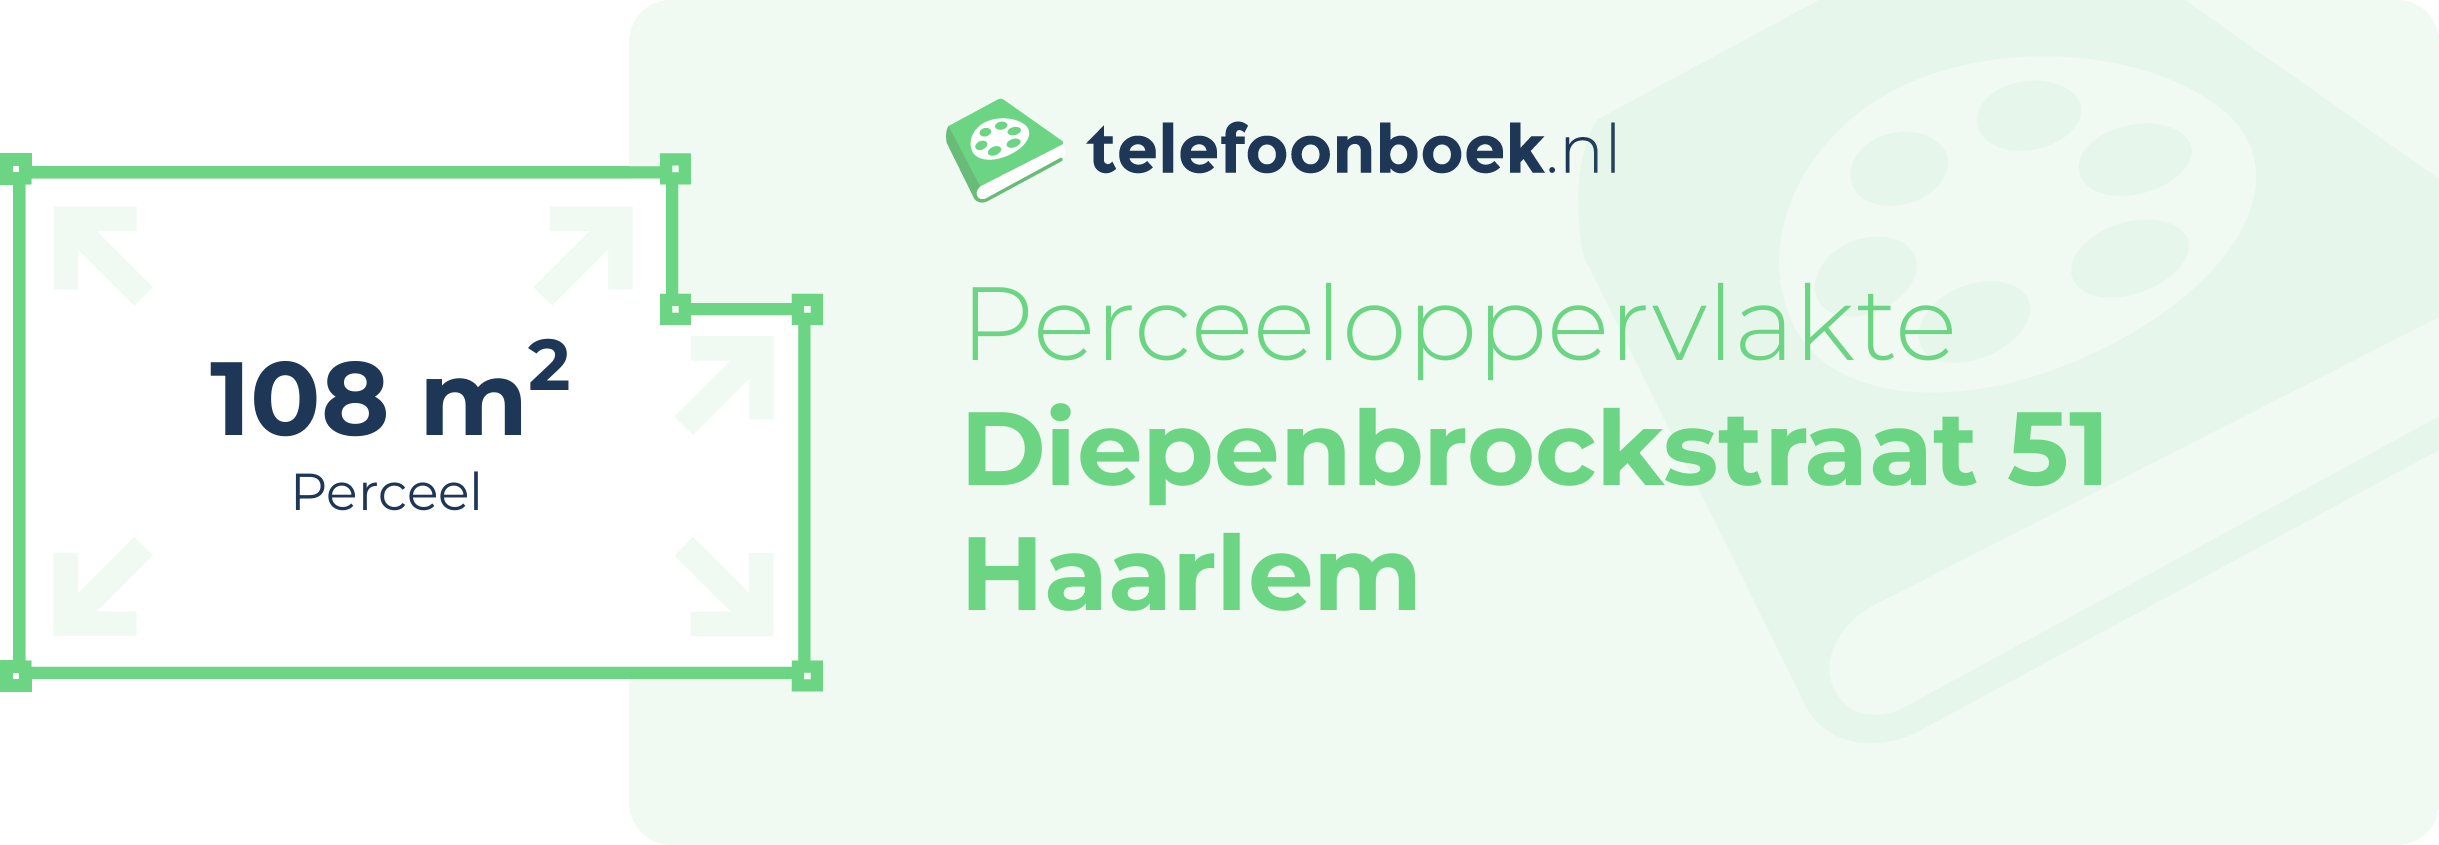 Perceeloppervlakte Diepenbrockstraat 51 Haarlem